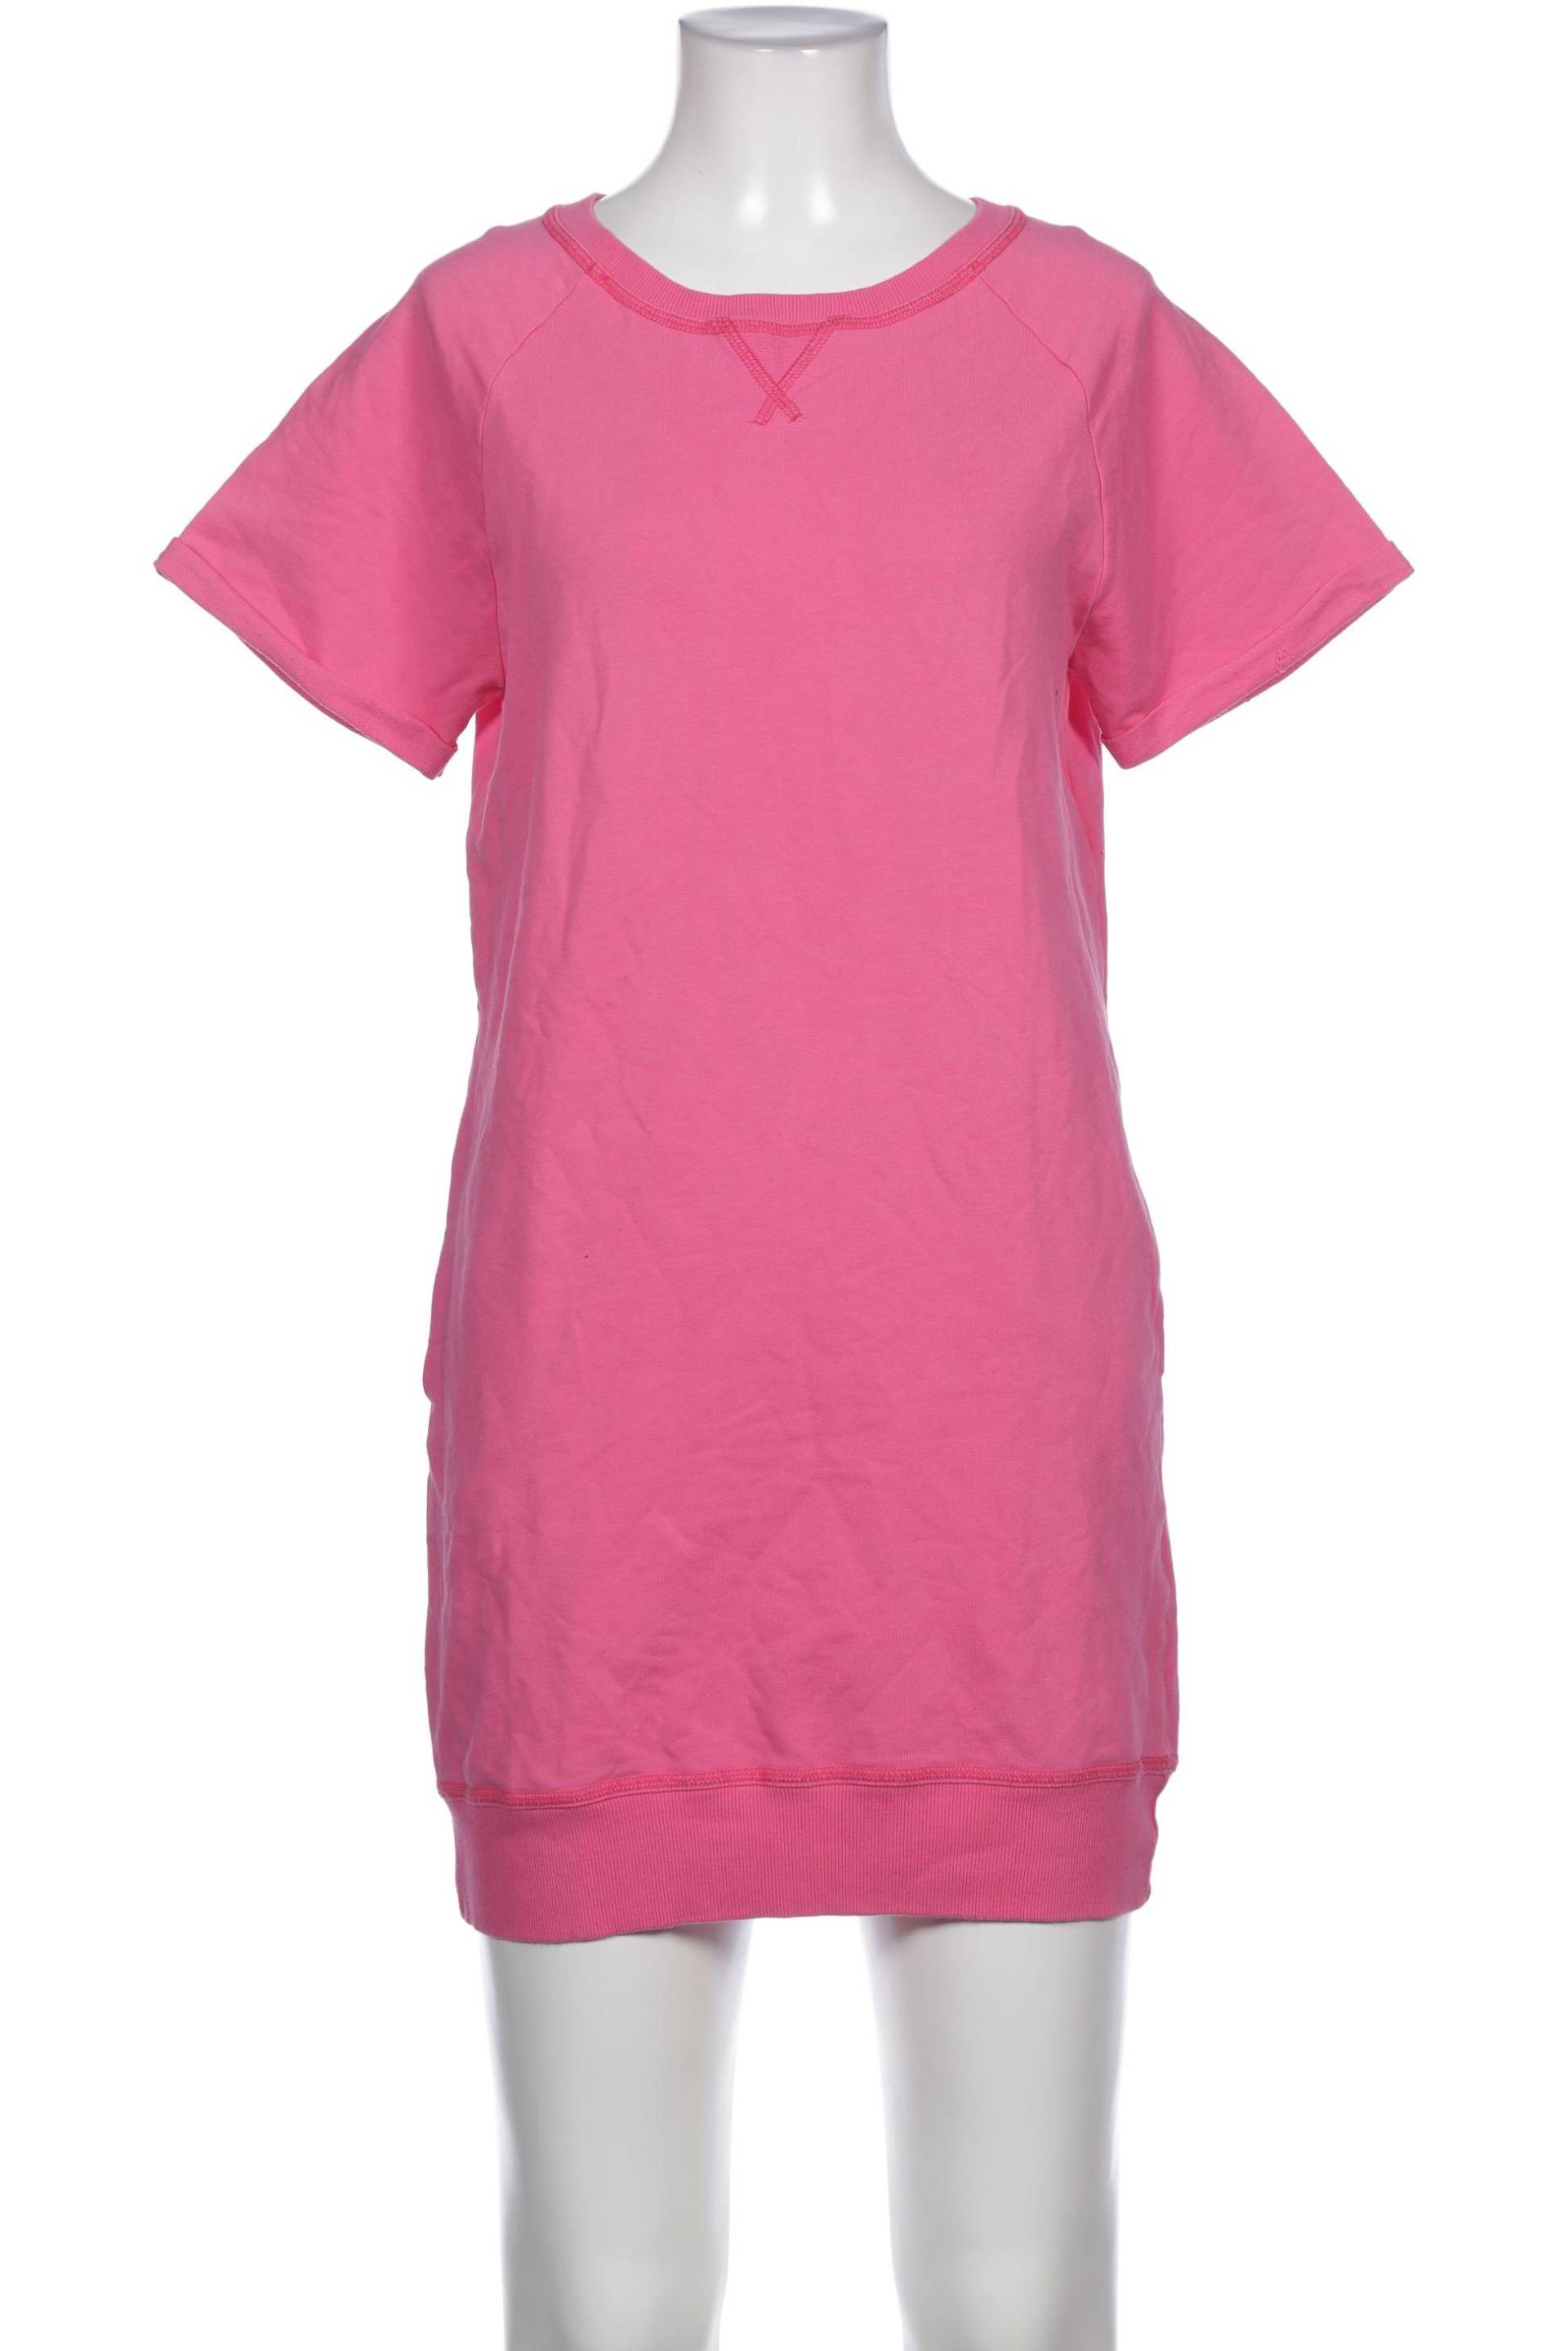 Blaumax Damen Kleid, pink, Gr. 34 von BLAUMAX